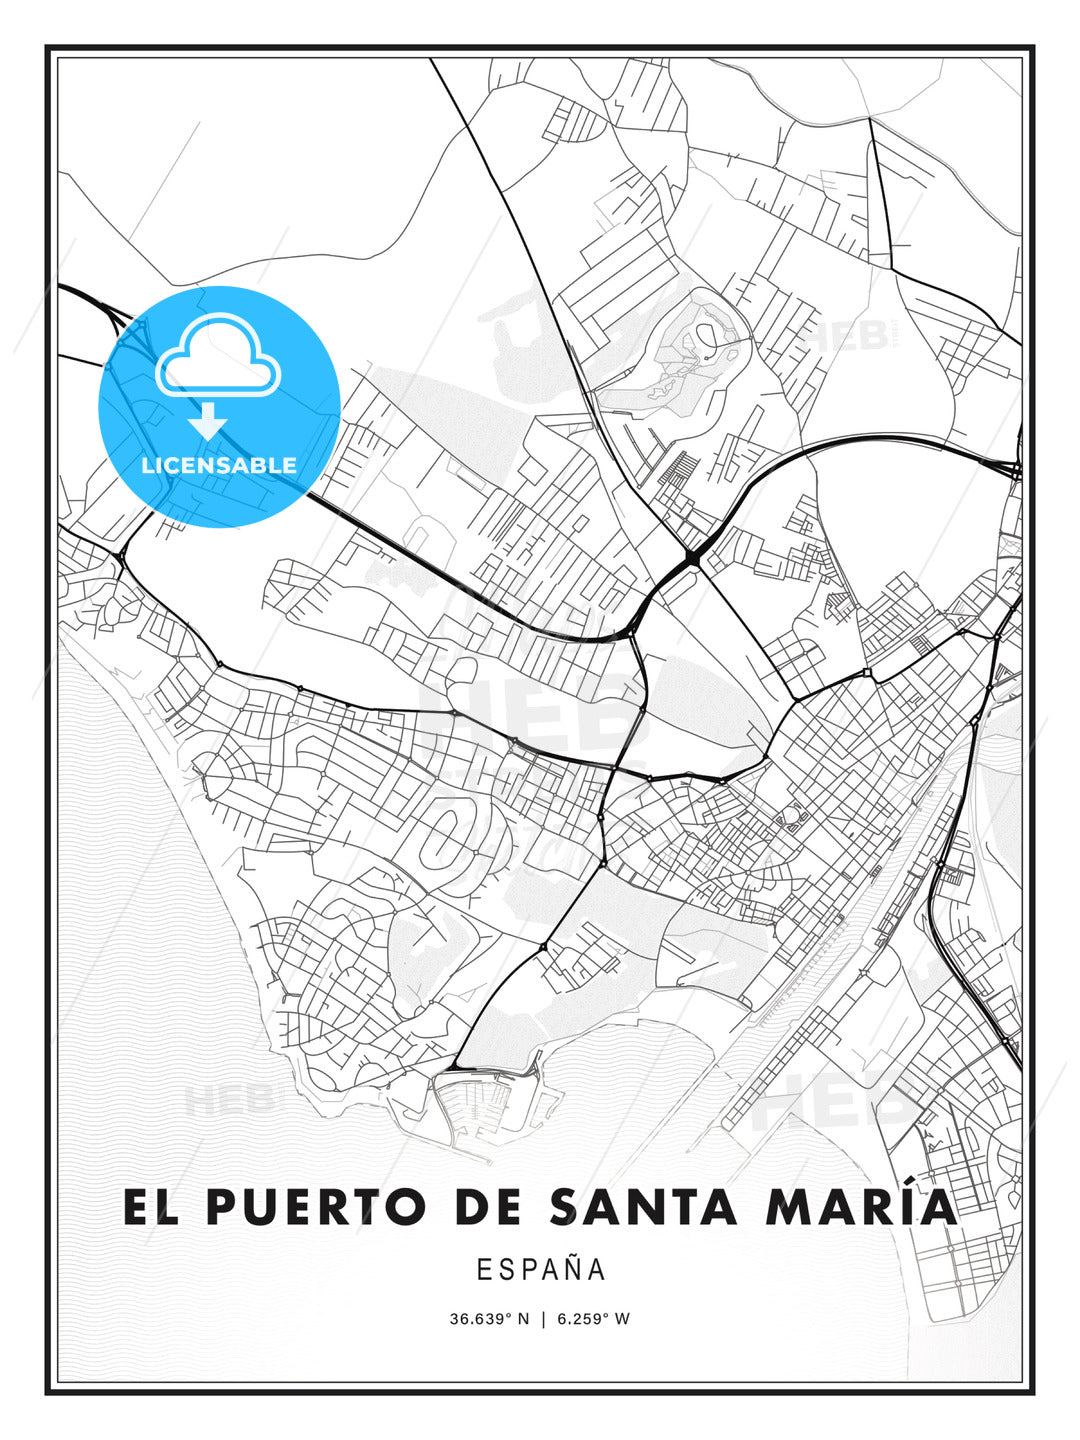 El Puerto de Santa María, Spain, Modern Print Template in Various Formats - HEBSTREITS Sketches